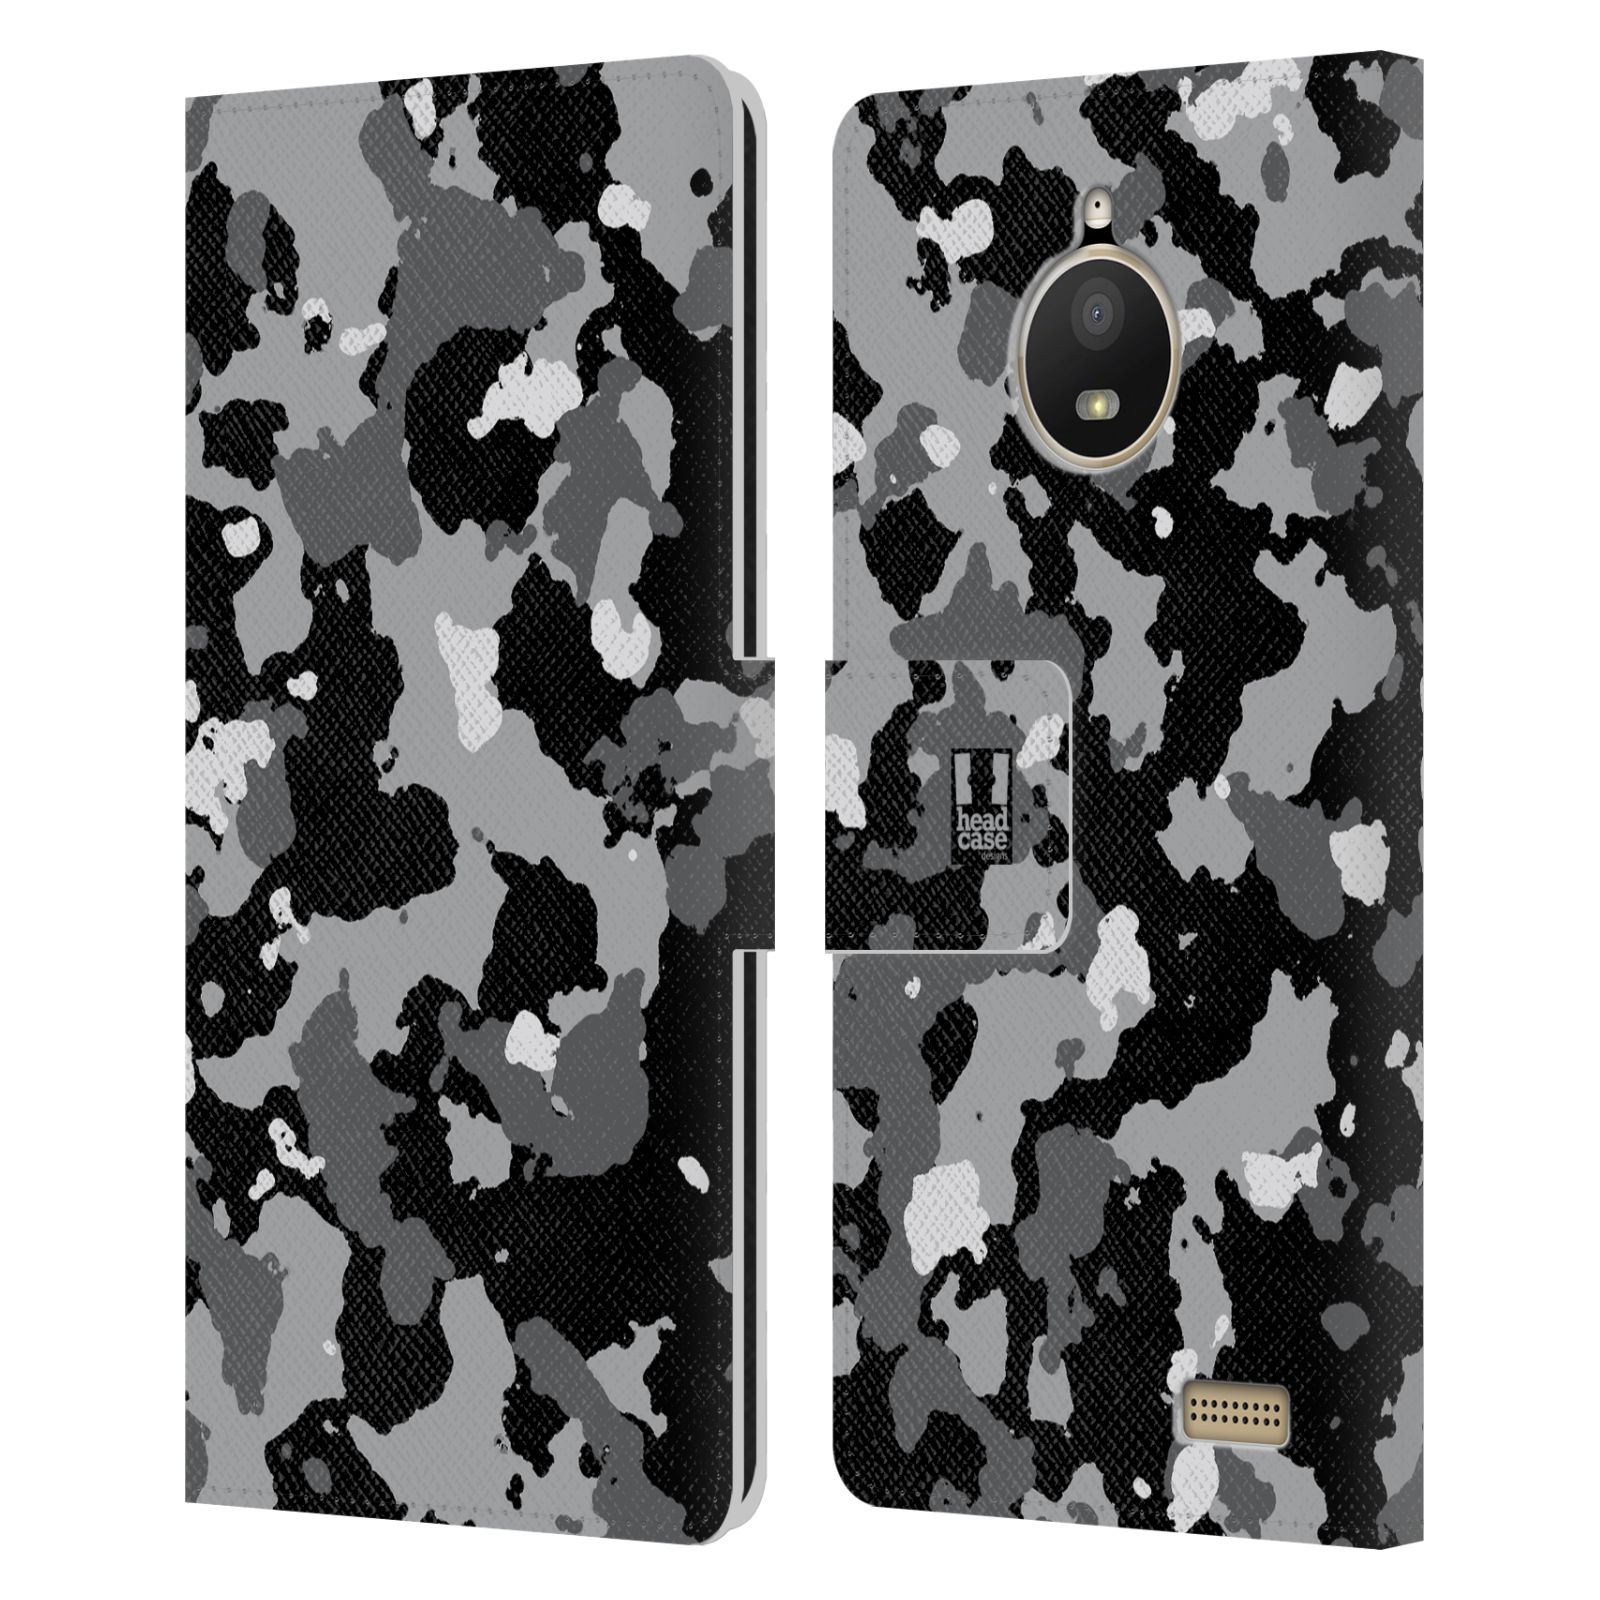 Pouzdro na mobil Lenovo Moto E4 - Head Case - kamuflaž černá a šedá